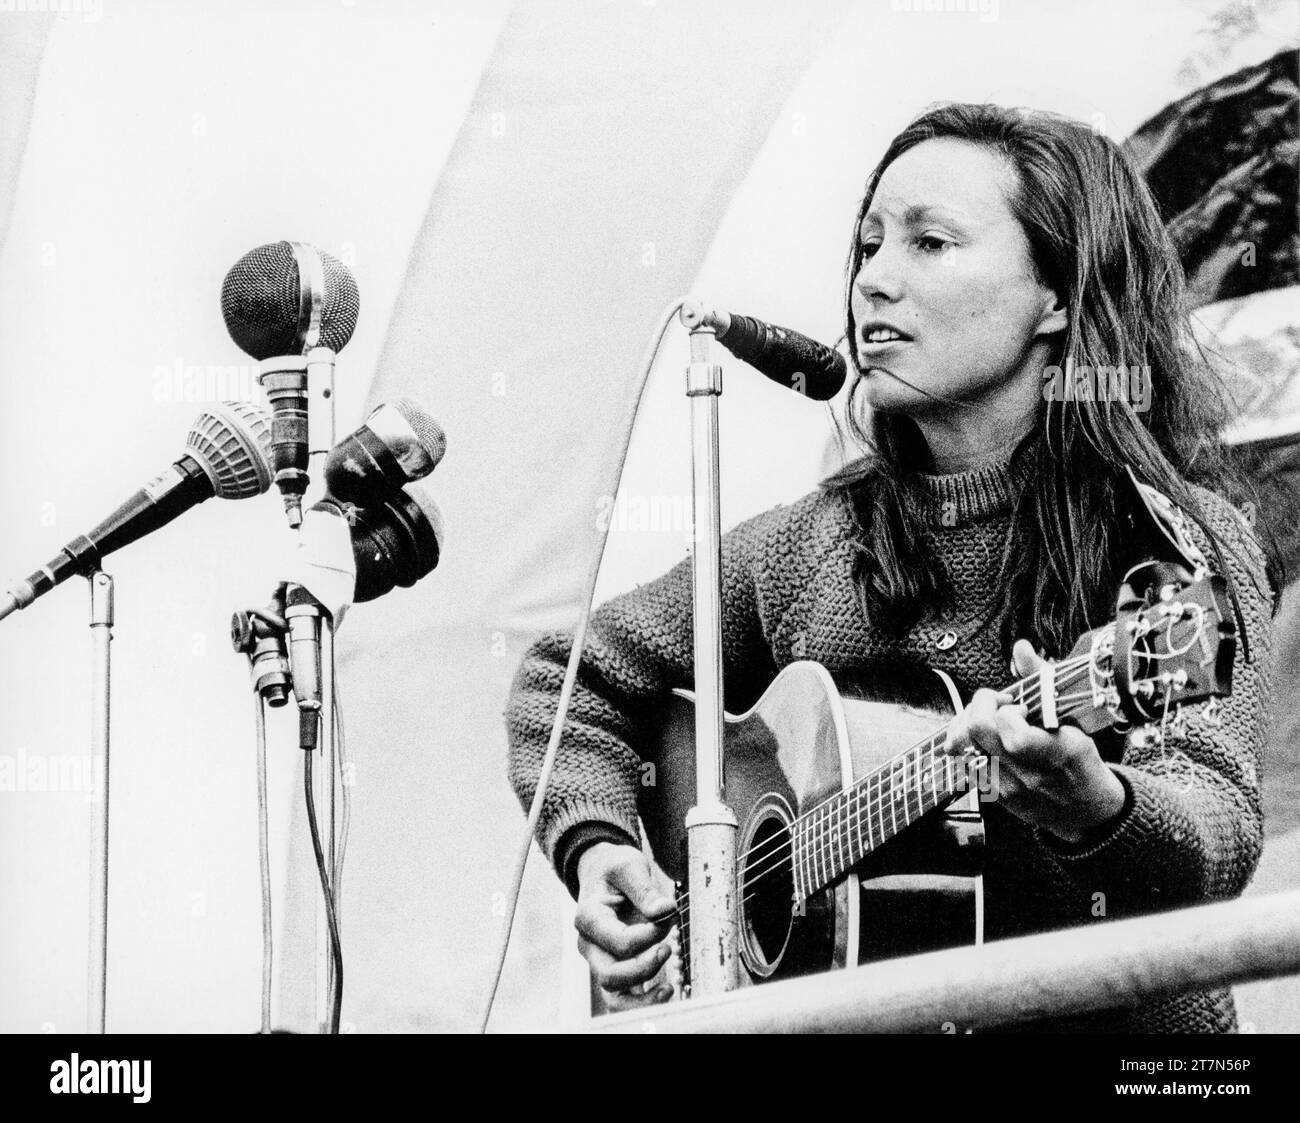 La cantante folk americana Julie Felix (1938-2020) si esibì in una protesta contro la guerra del Vietnam a Trafalgar Square, Londra nel 1968 Foto Stock